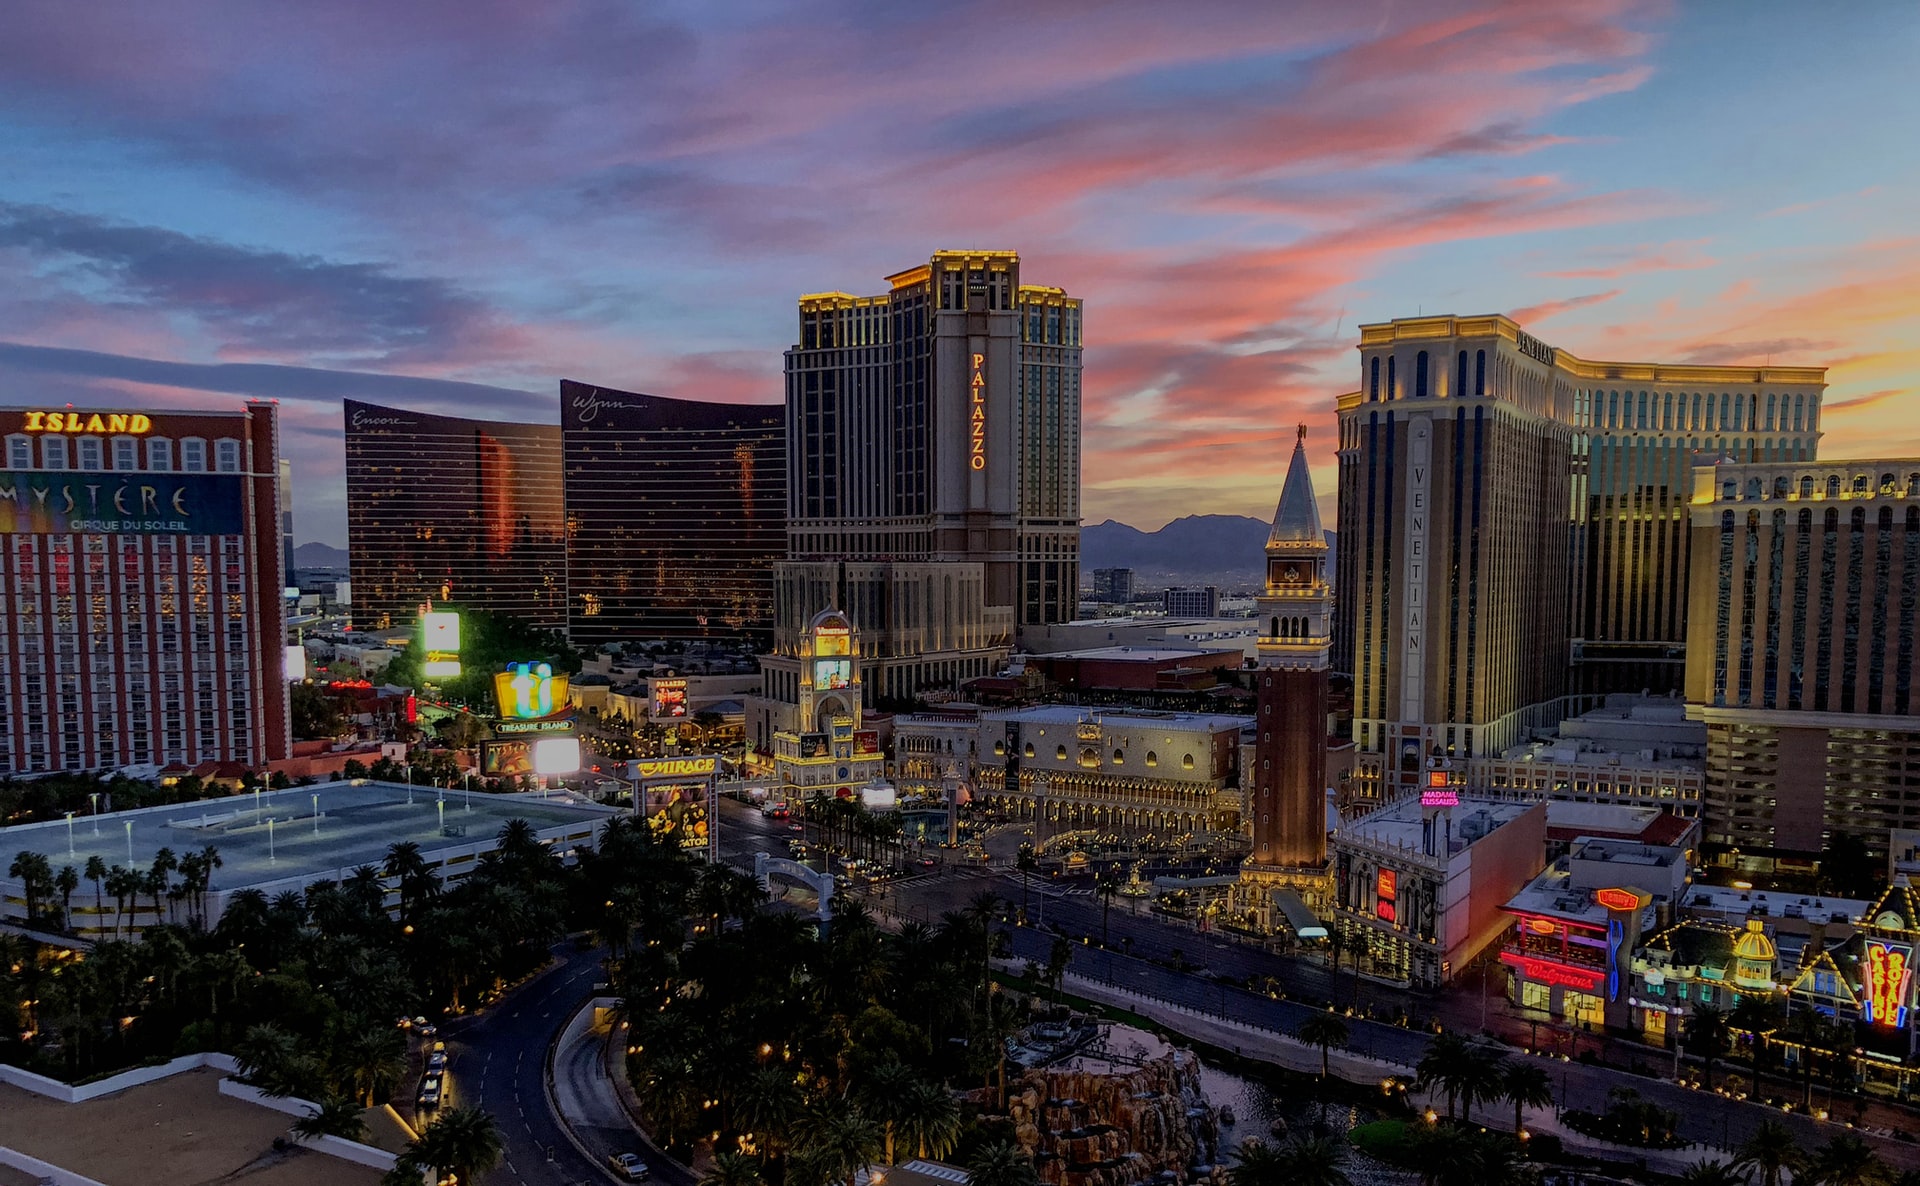 Image description: The Las Vegas skyline at sunset. End of alt text. 